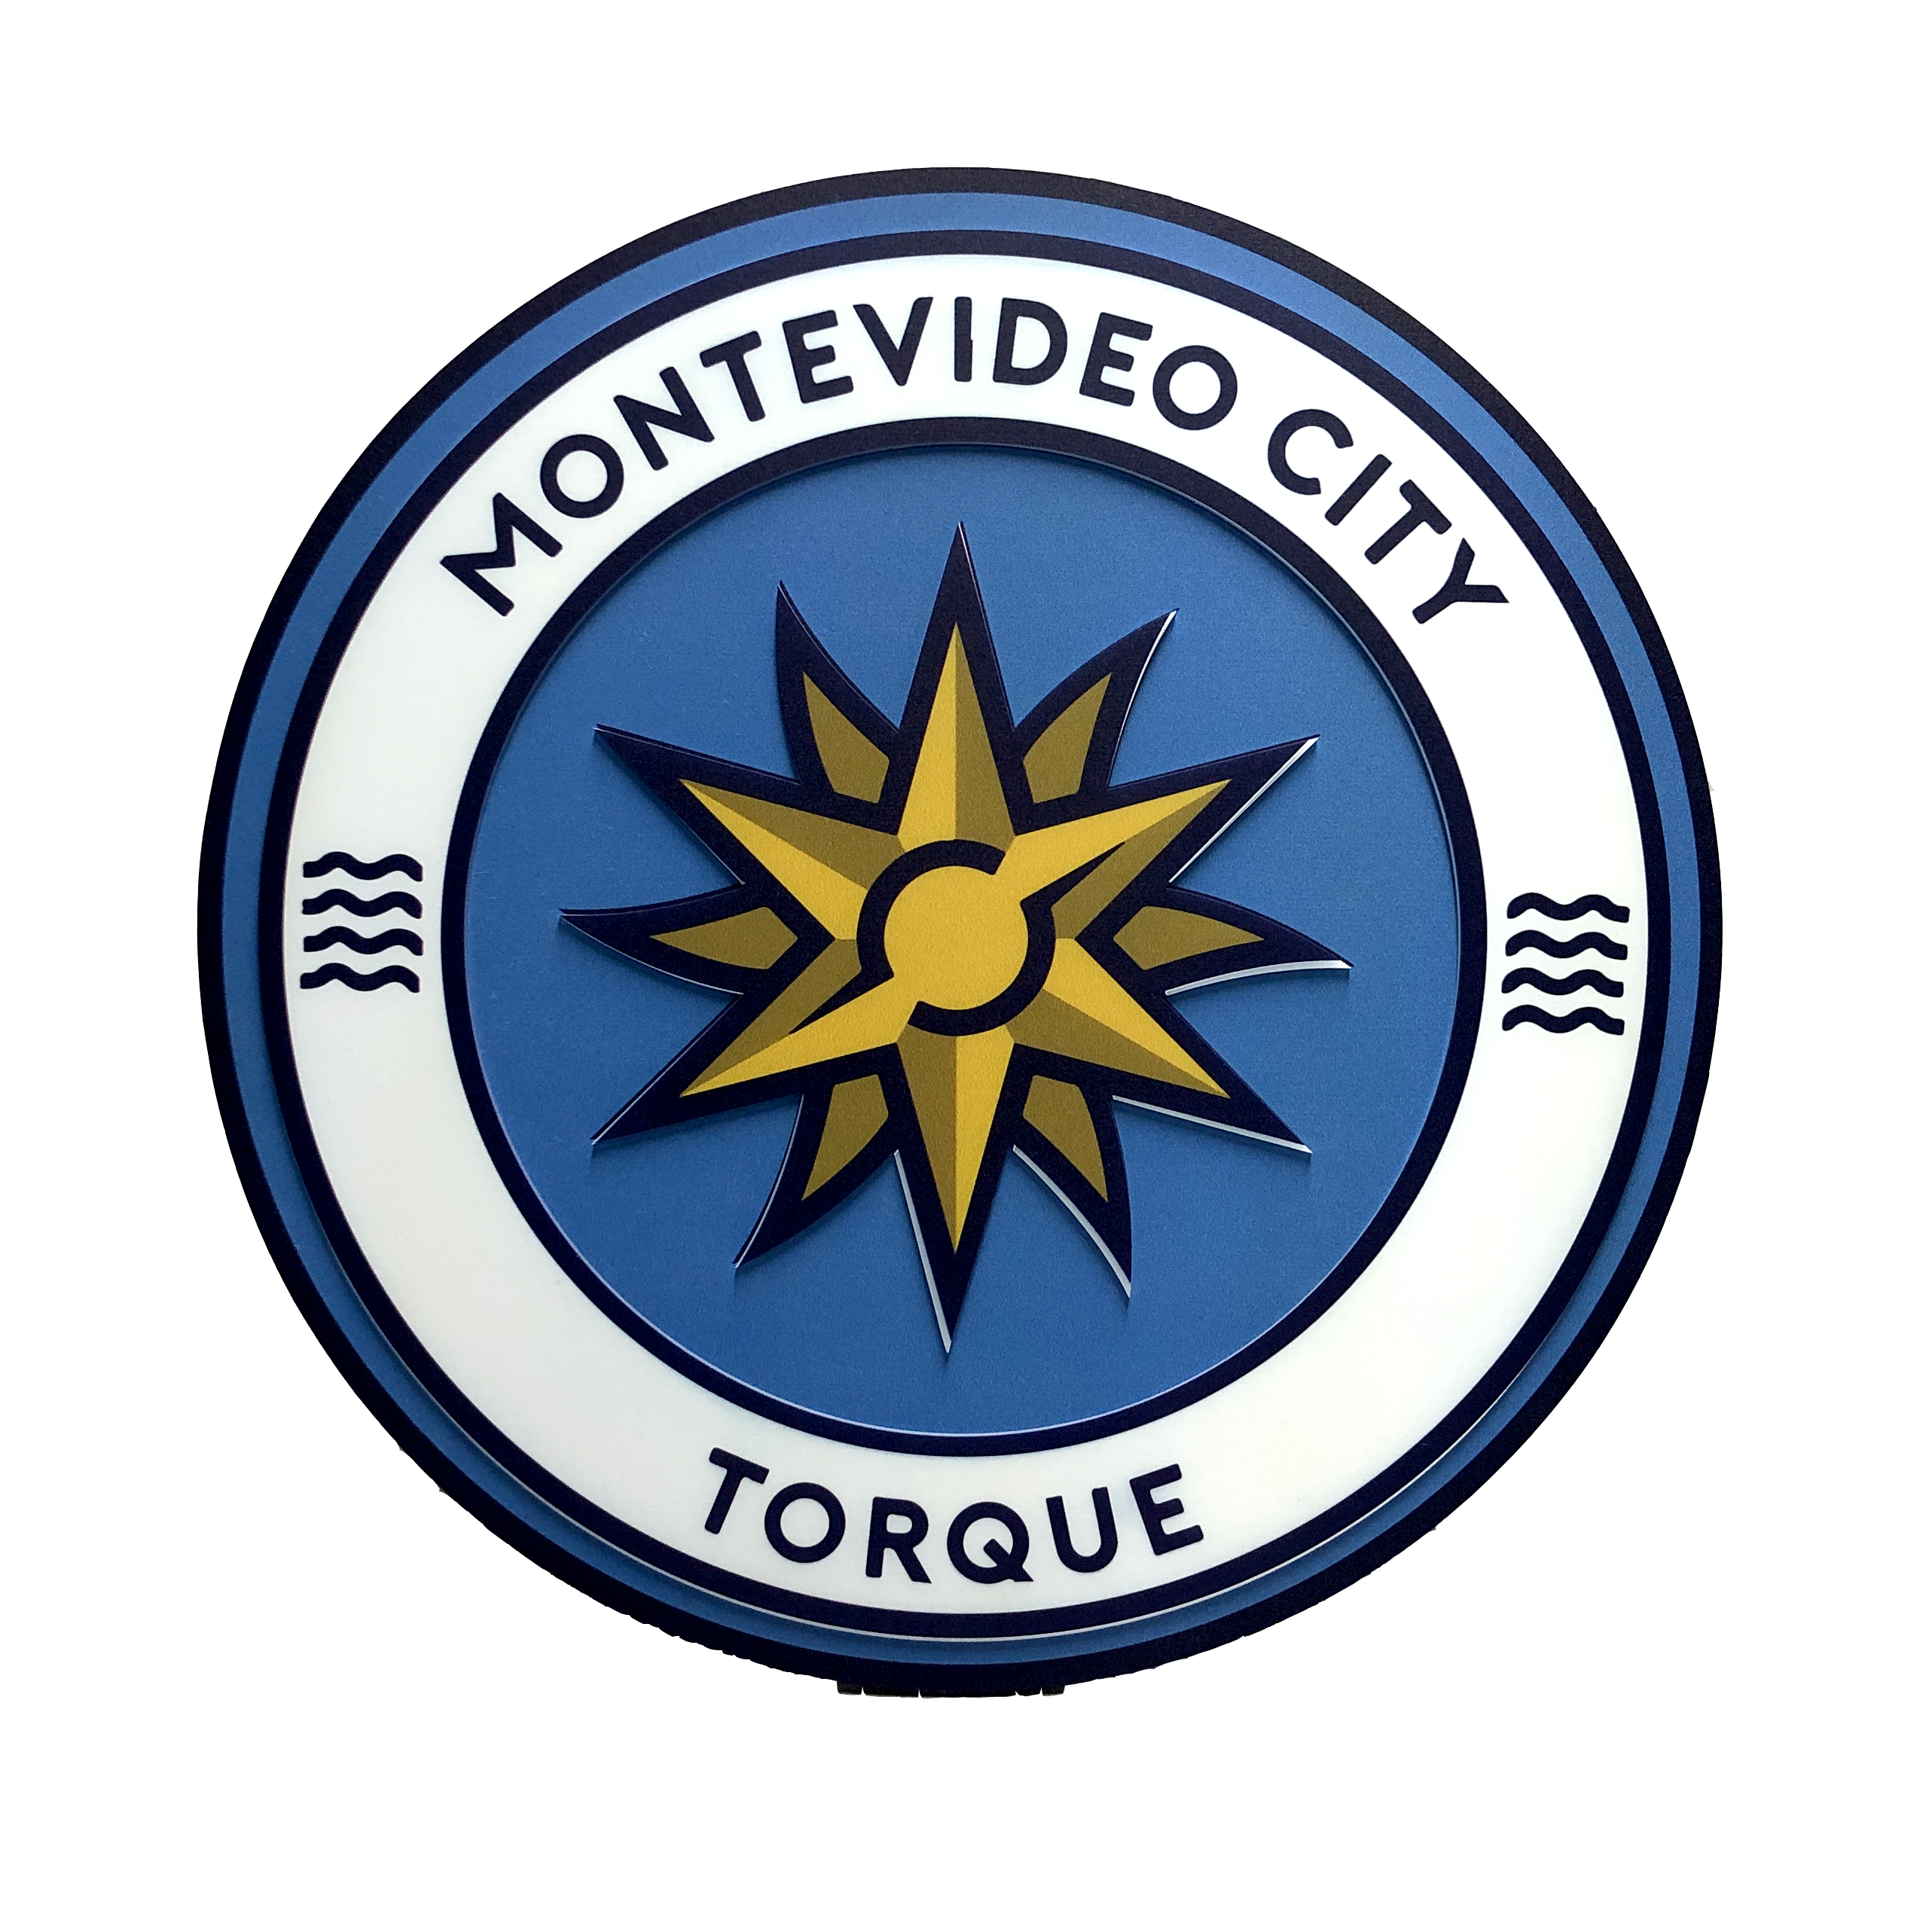 Escudo Montevideo City Torque